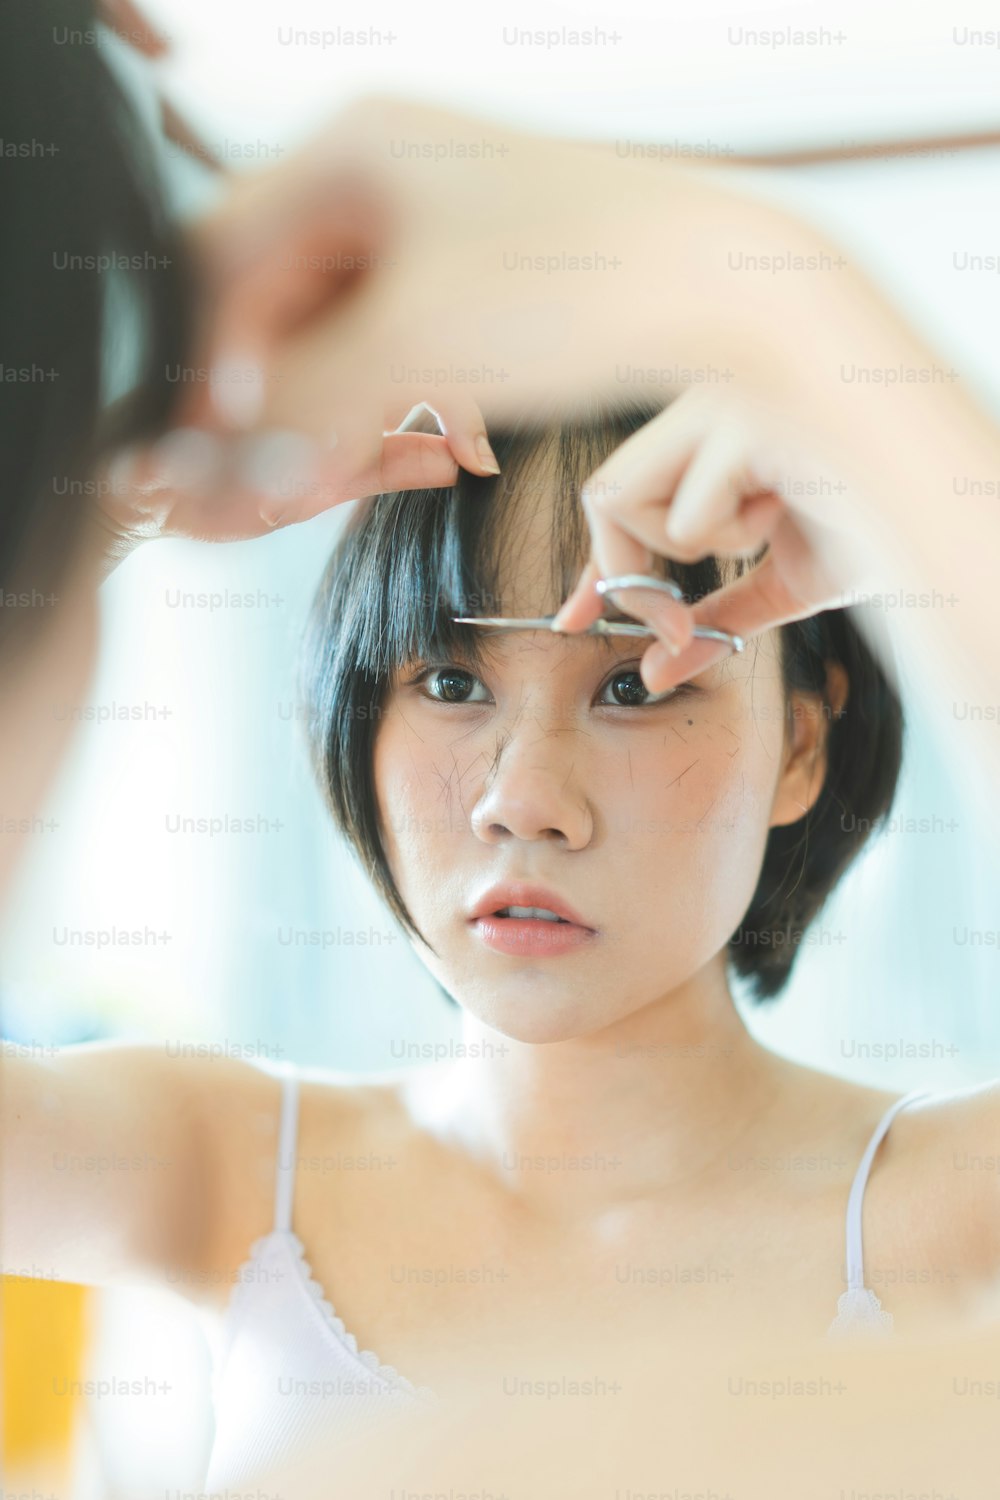 Zufriedenheit Lebensstil Stay at Home Konzept. Junge Erwachsene authentische asiatische Frau selbstschneidend schlägt Haarschnitt mit Schere. Hintergrund am Tag mit Naturlicht.